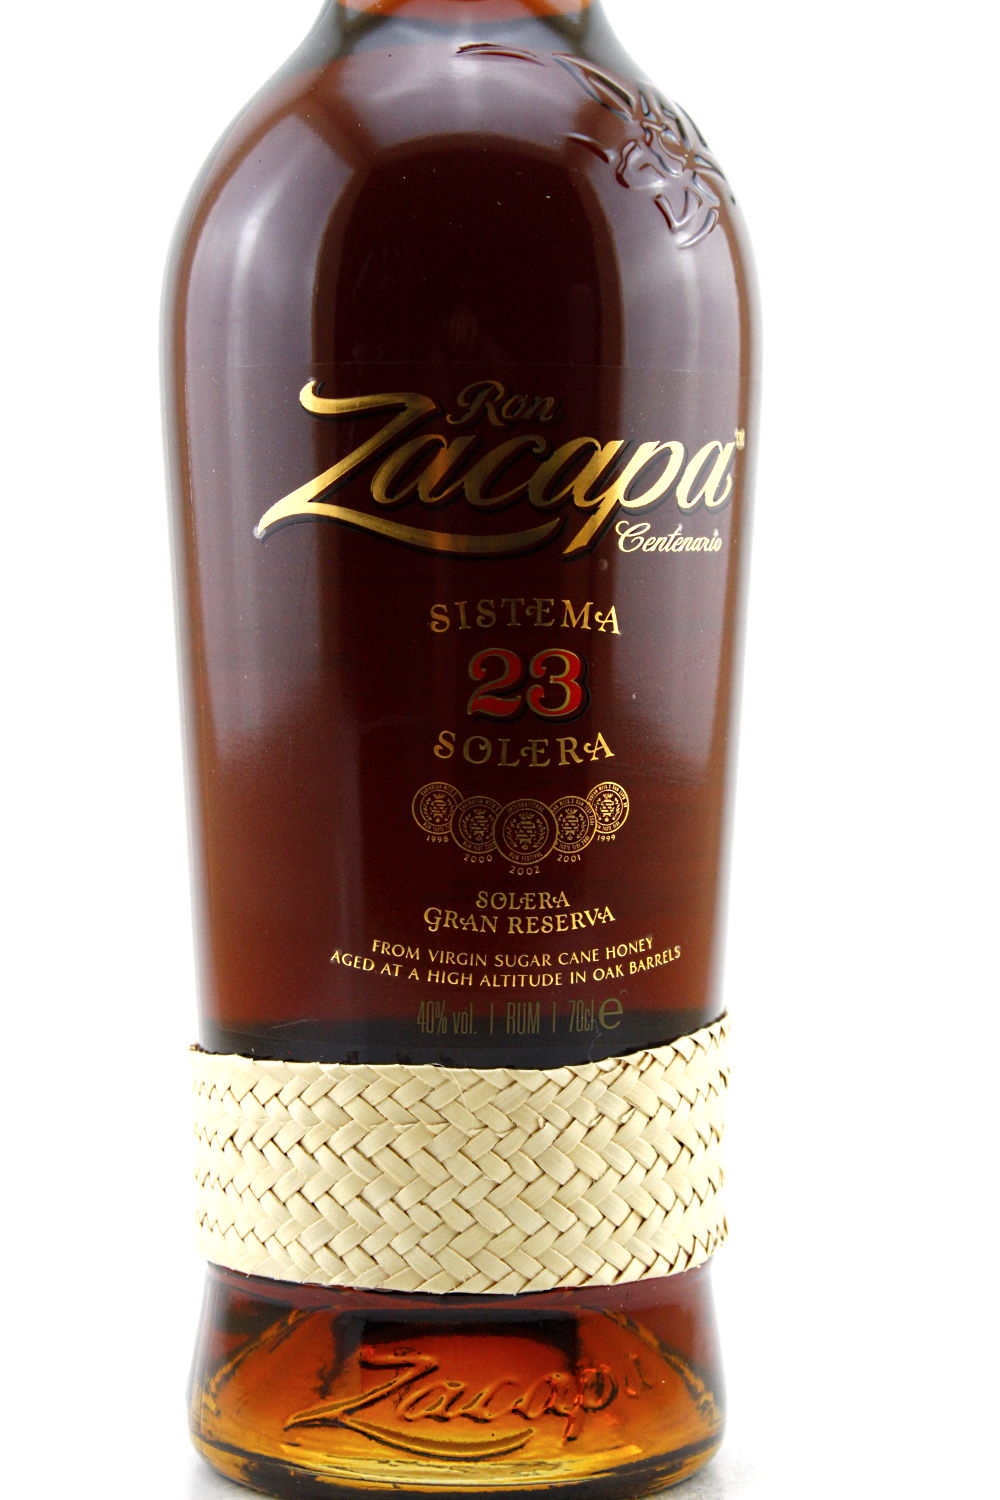 Ron Y vol. Zacapa 43% 23 Zacapa Solera Reserva Gran Rum Centenario